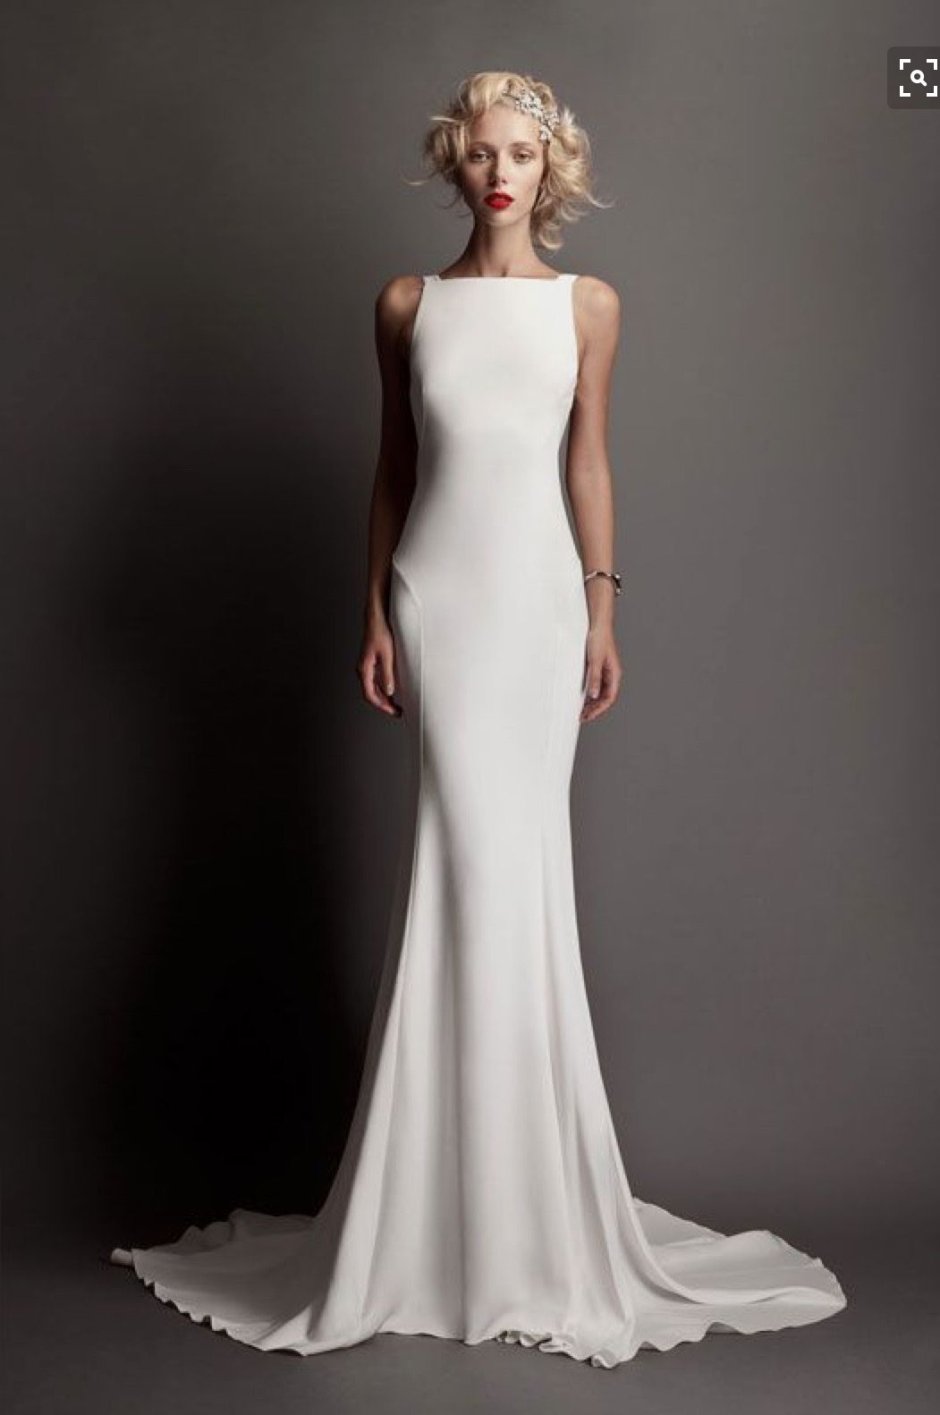 Белое платье футляр на свадьбу